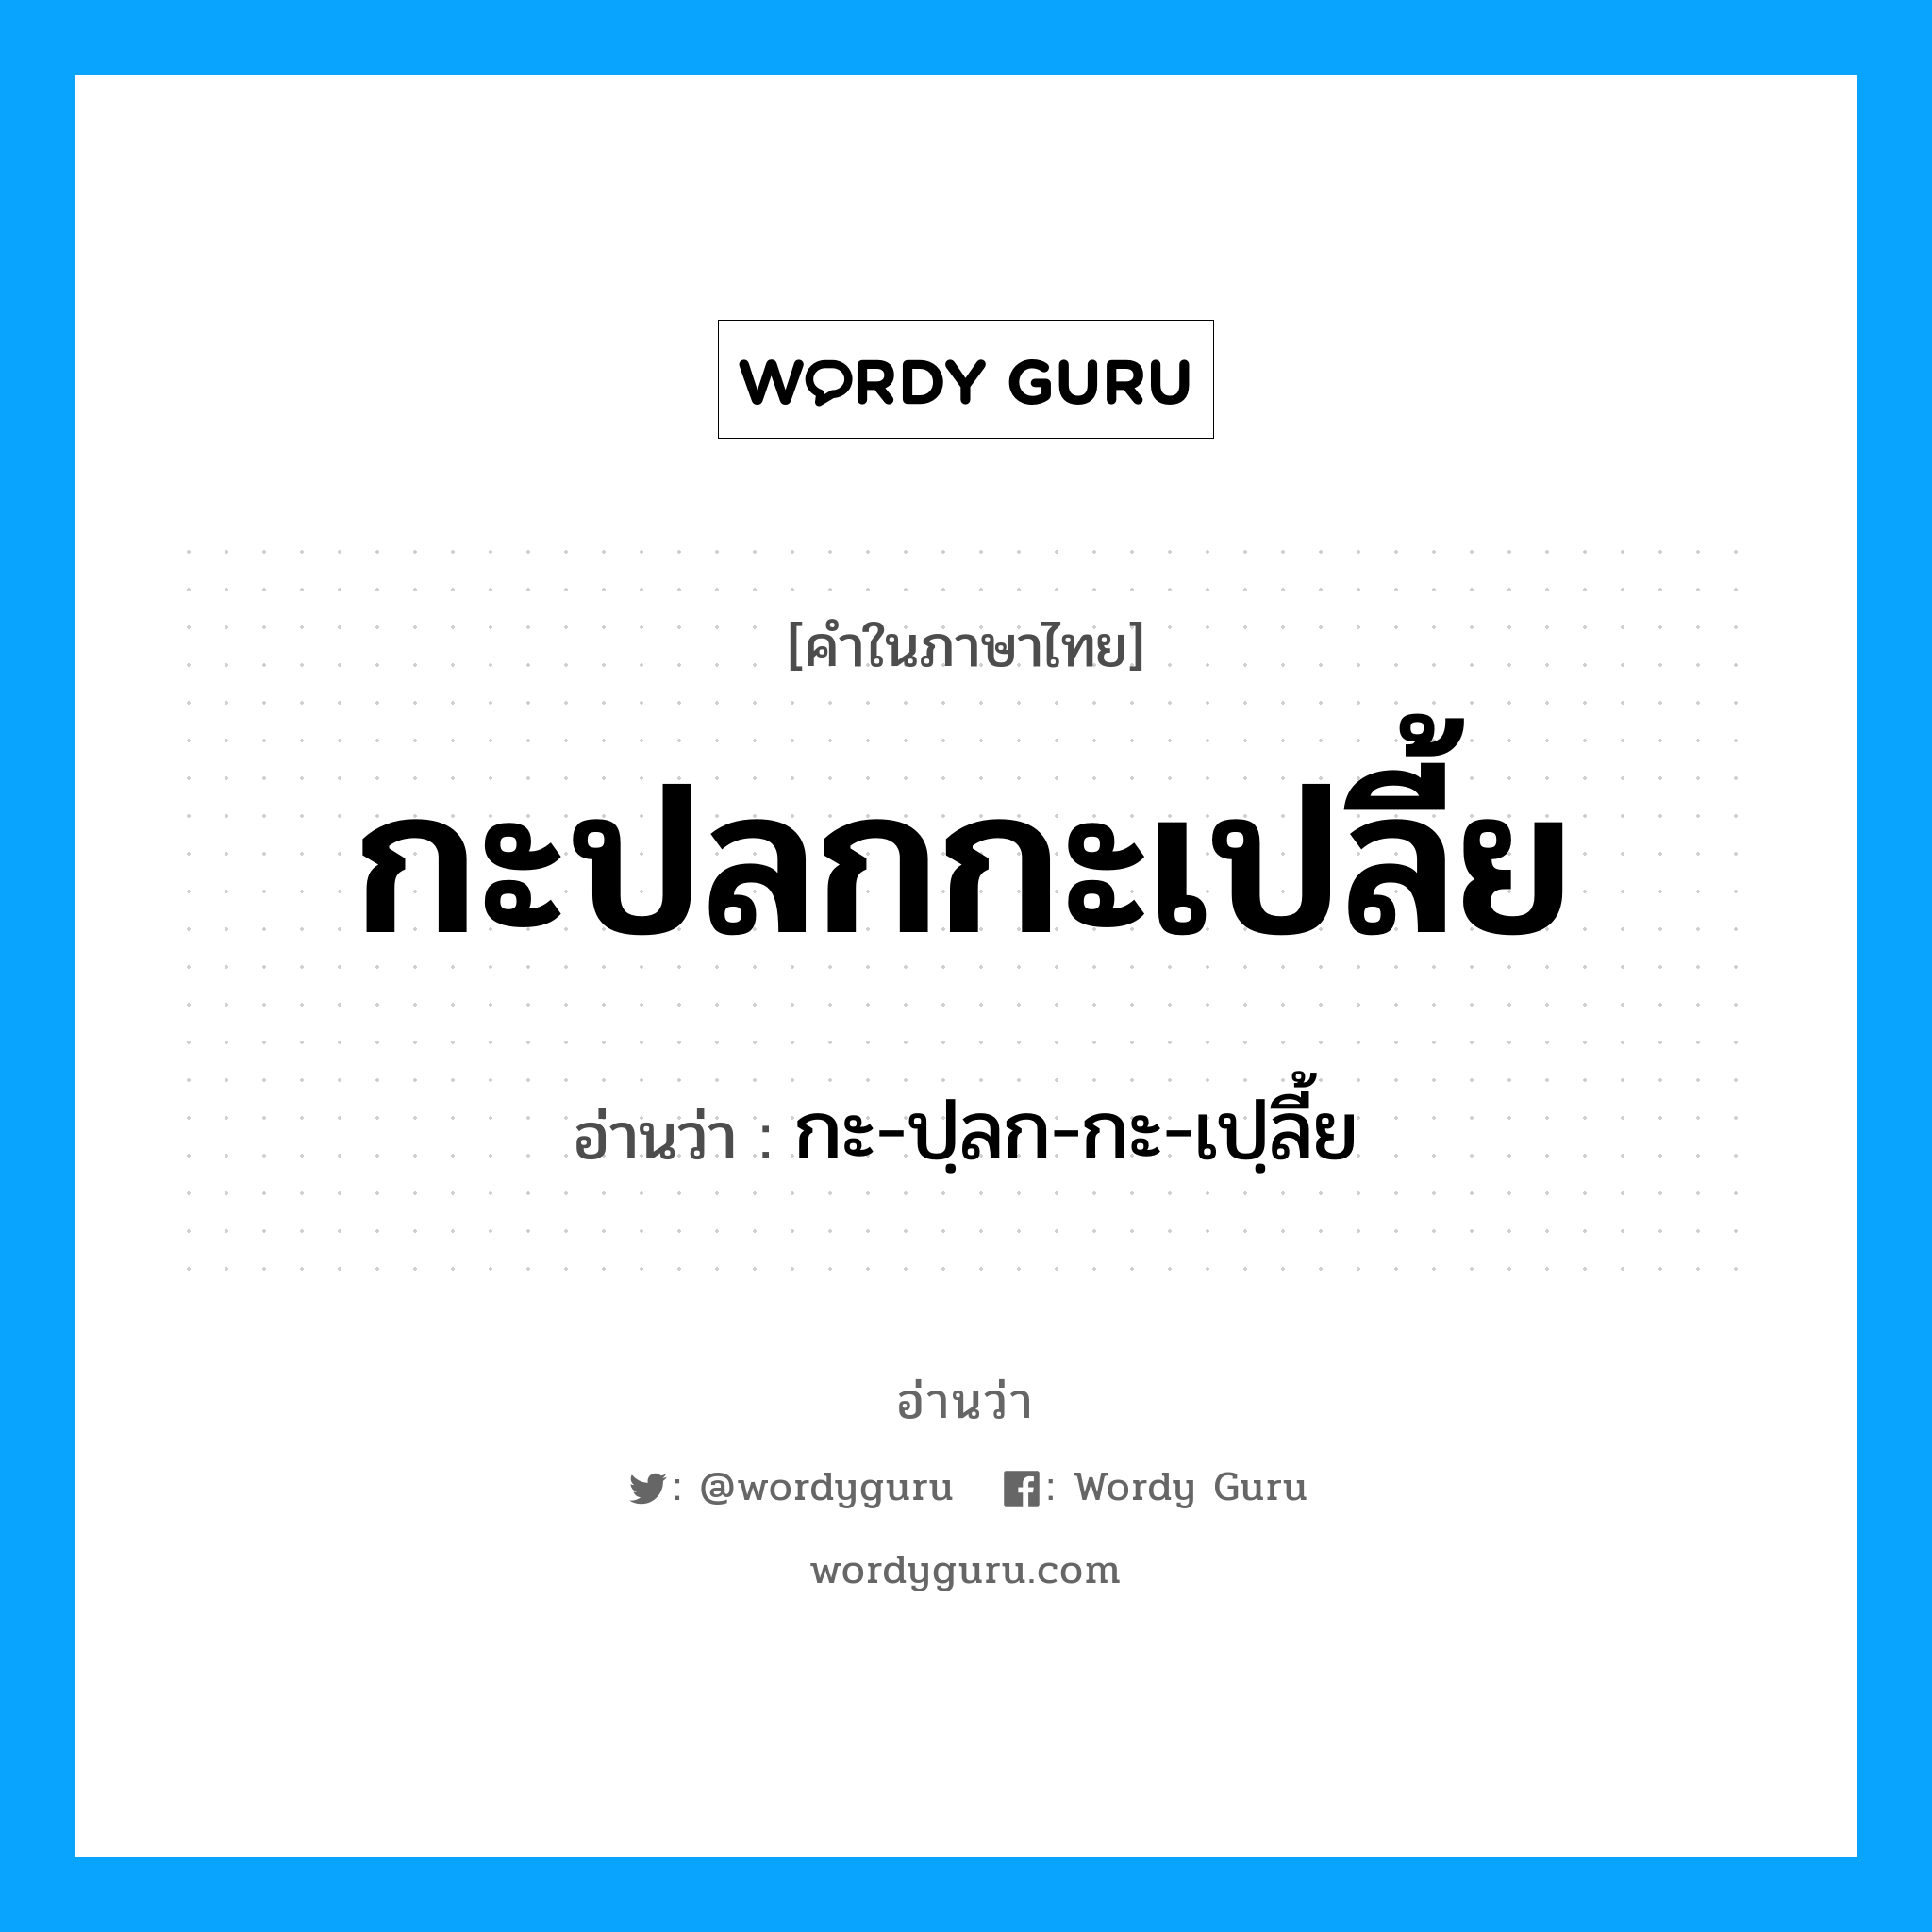 กะ-ปฺลก-กะ-เปฺลี้ย เป็นคำอ่านของคำไหน?, คำในภาษาไทย กะ-ปฺลก-กะ-เปฺลี้ย อ่านว่า กะปลกกะเปลี้ย